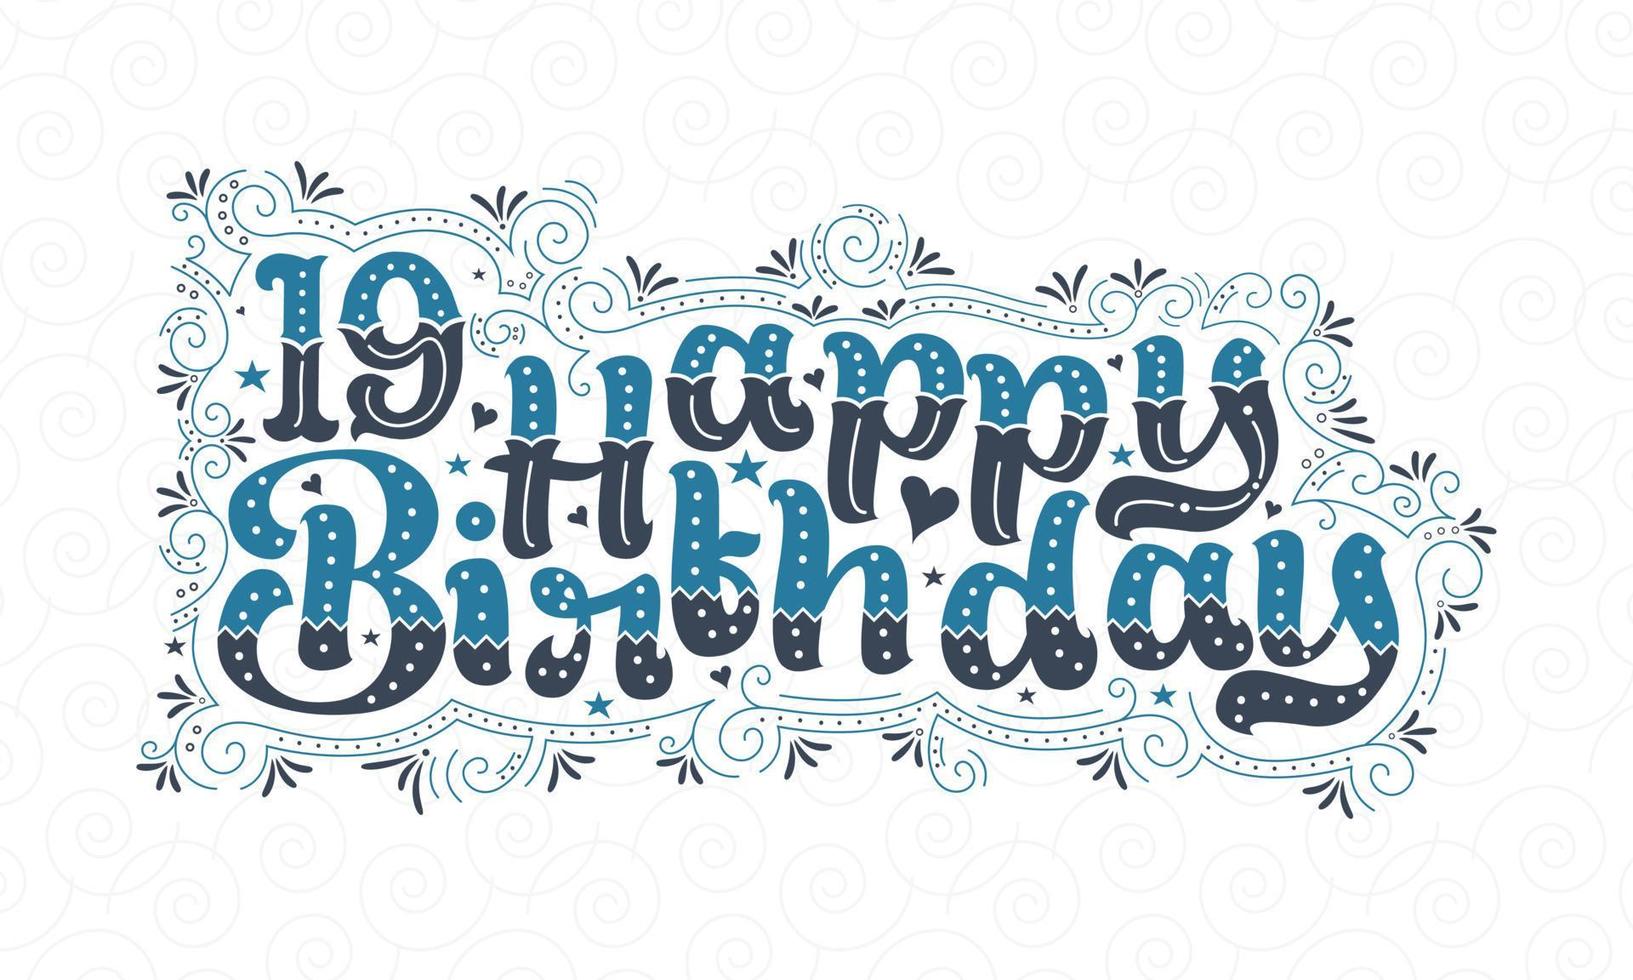 19e gelukkige verjaardag belettering, 19 jaar verjaardag mooi typografieontwerp met blauwe en zwarte stippen, lijnen en bladeren. vector